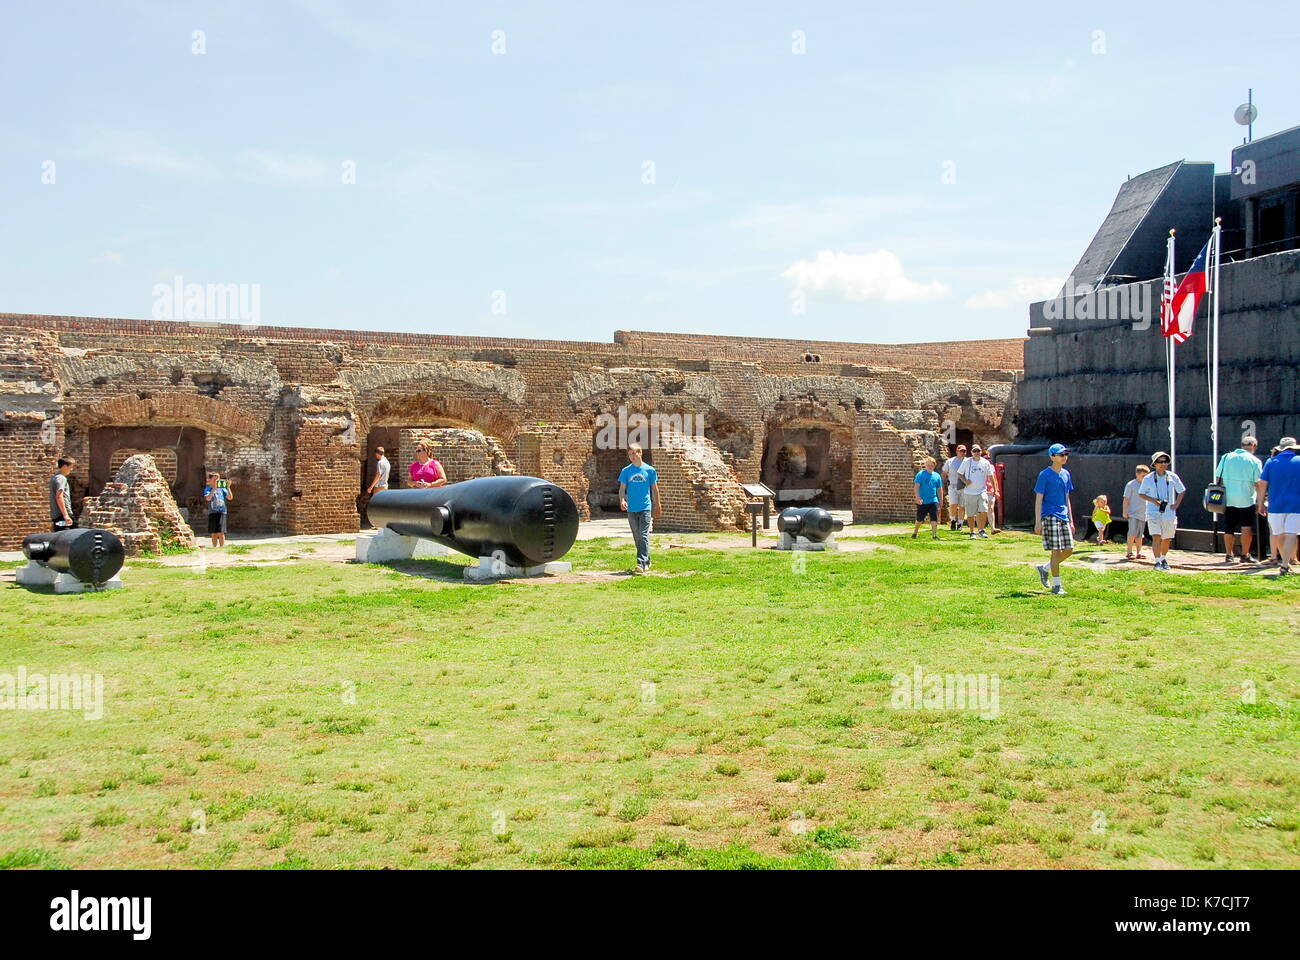 Fort Sumter ist ein Fort in Charleston, South Carolina, bemerkenswert für zwei Schlachten des Amerikanischen Bürgerkrieges. Stockfoto